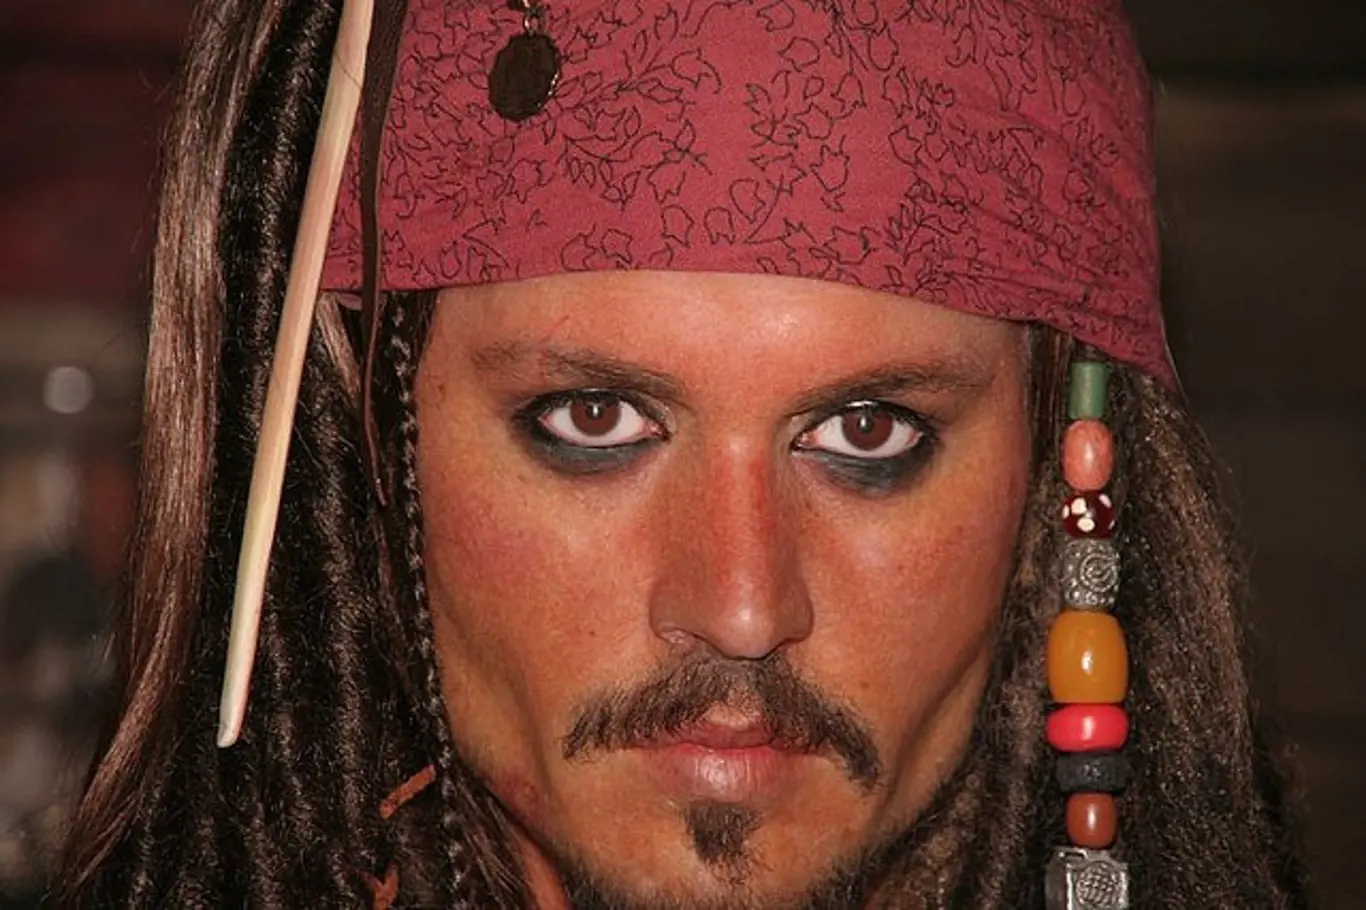 Kapitán Jack Sparrow je pravděpodobně nejznámějším fiktivním pirátem